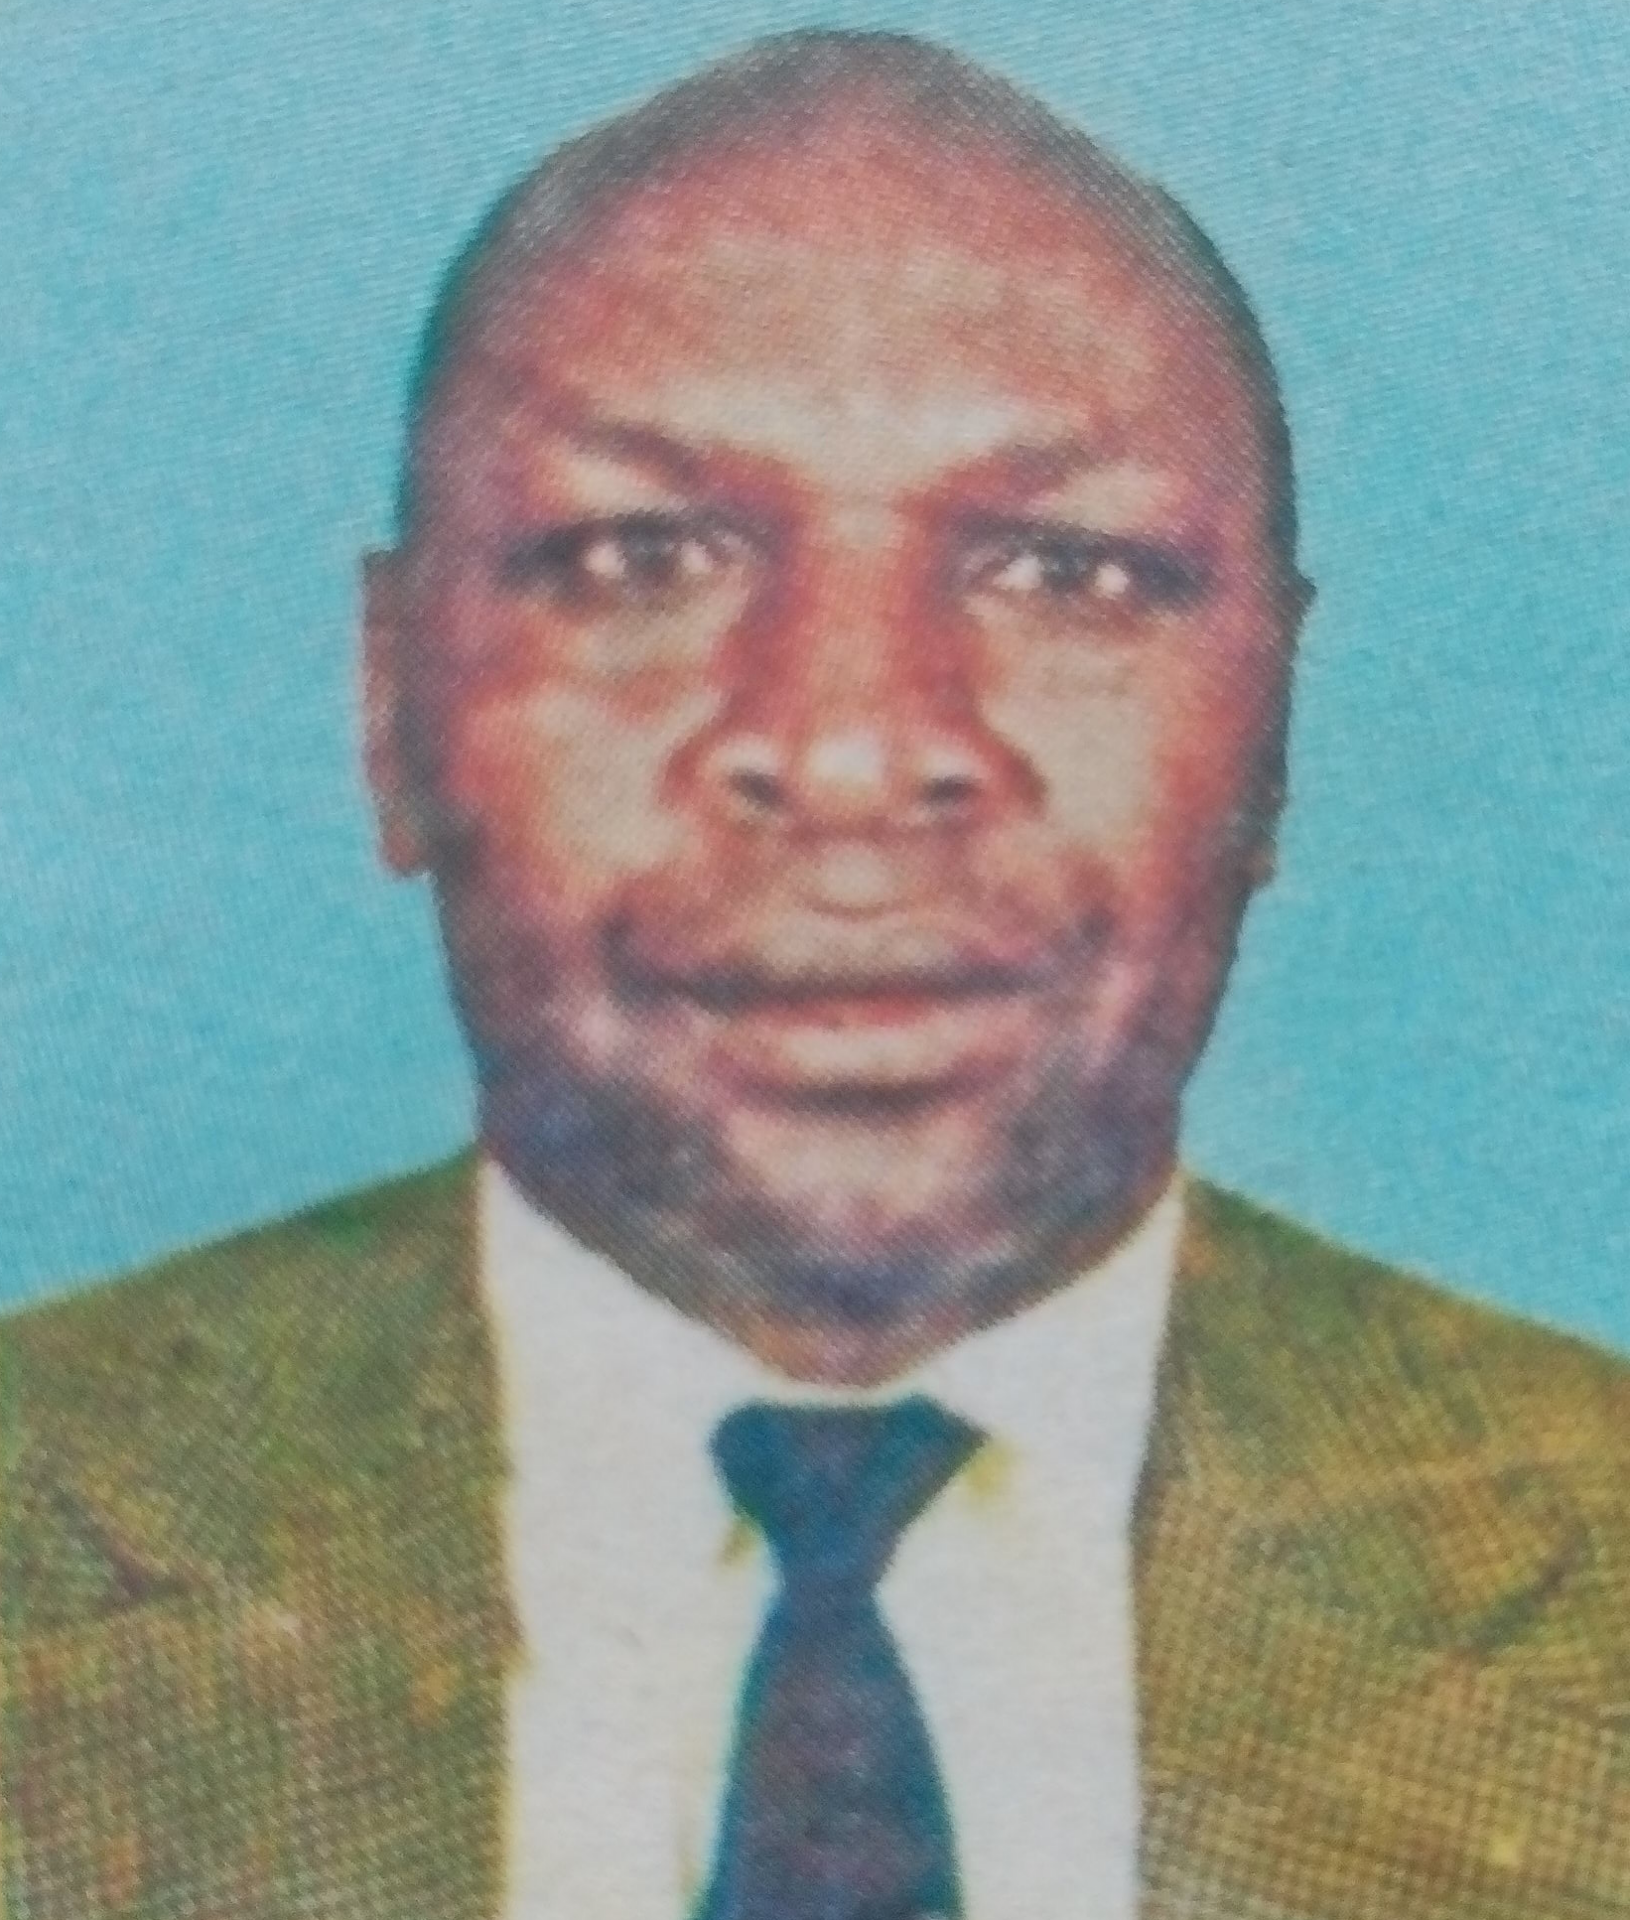 Obituary Image of Bernard Mungai (Ng'ang'a "Dagitari")